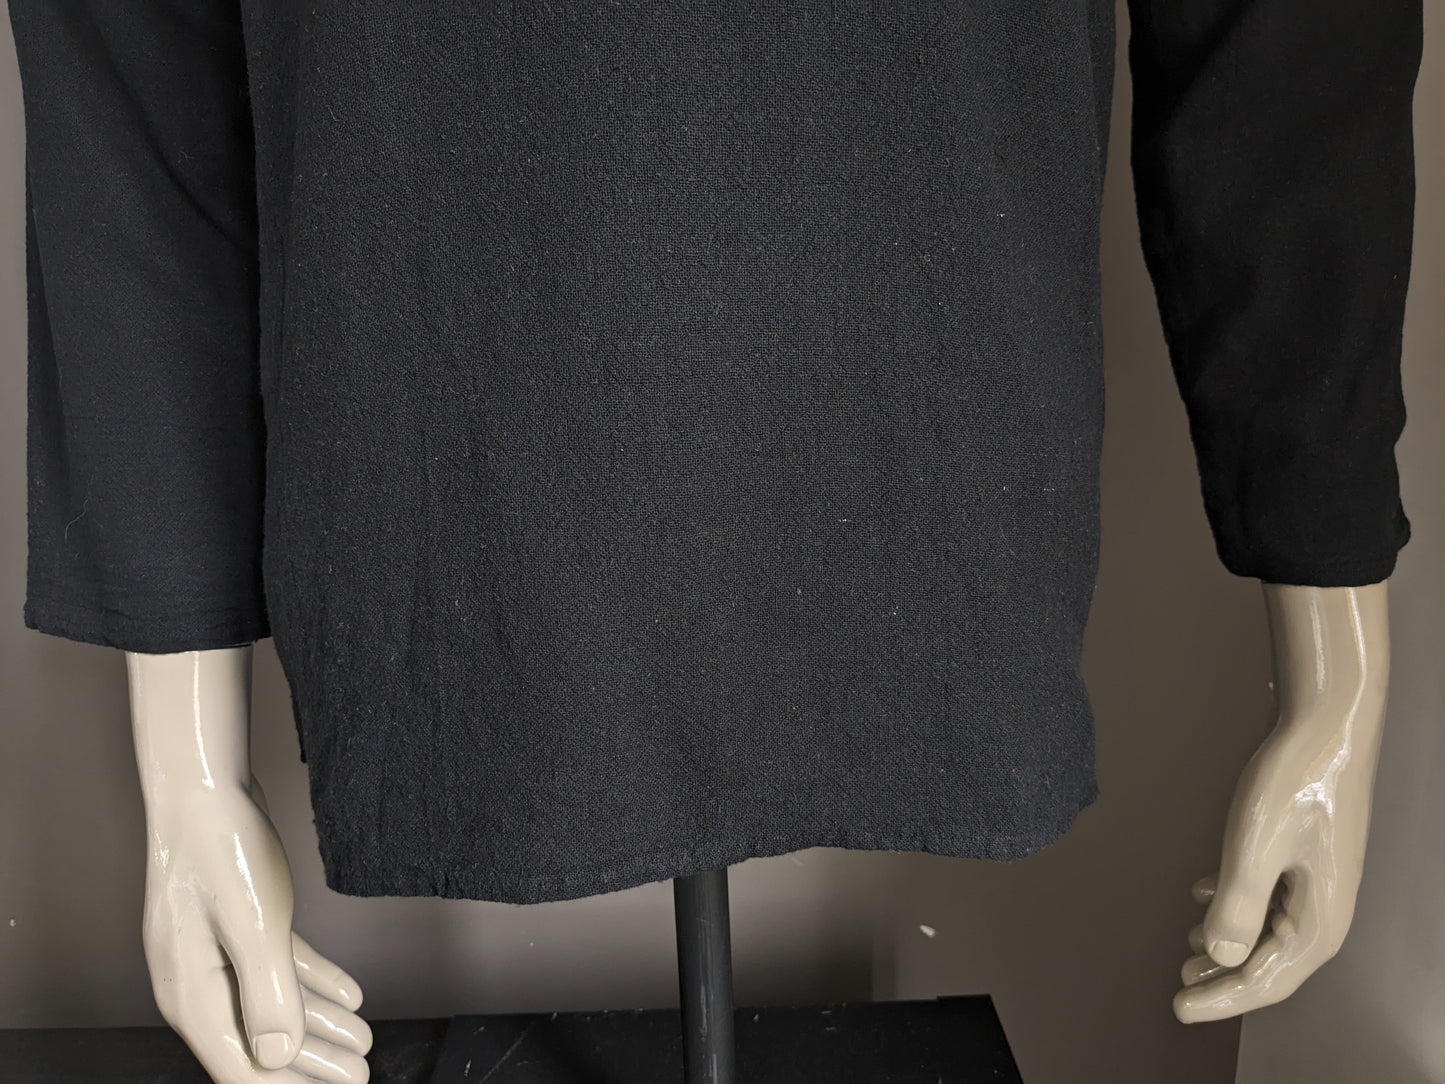 Camicia vintage con 1 borsa e mao / agricoltori / collare verticale. Colorato nero. Taglia M.